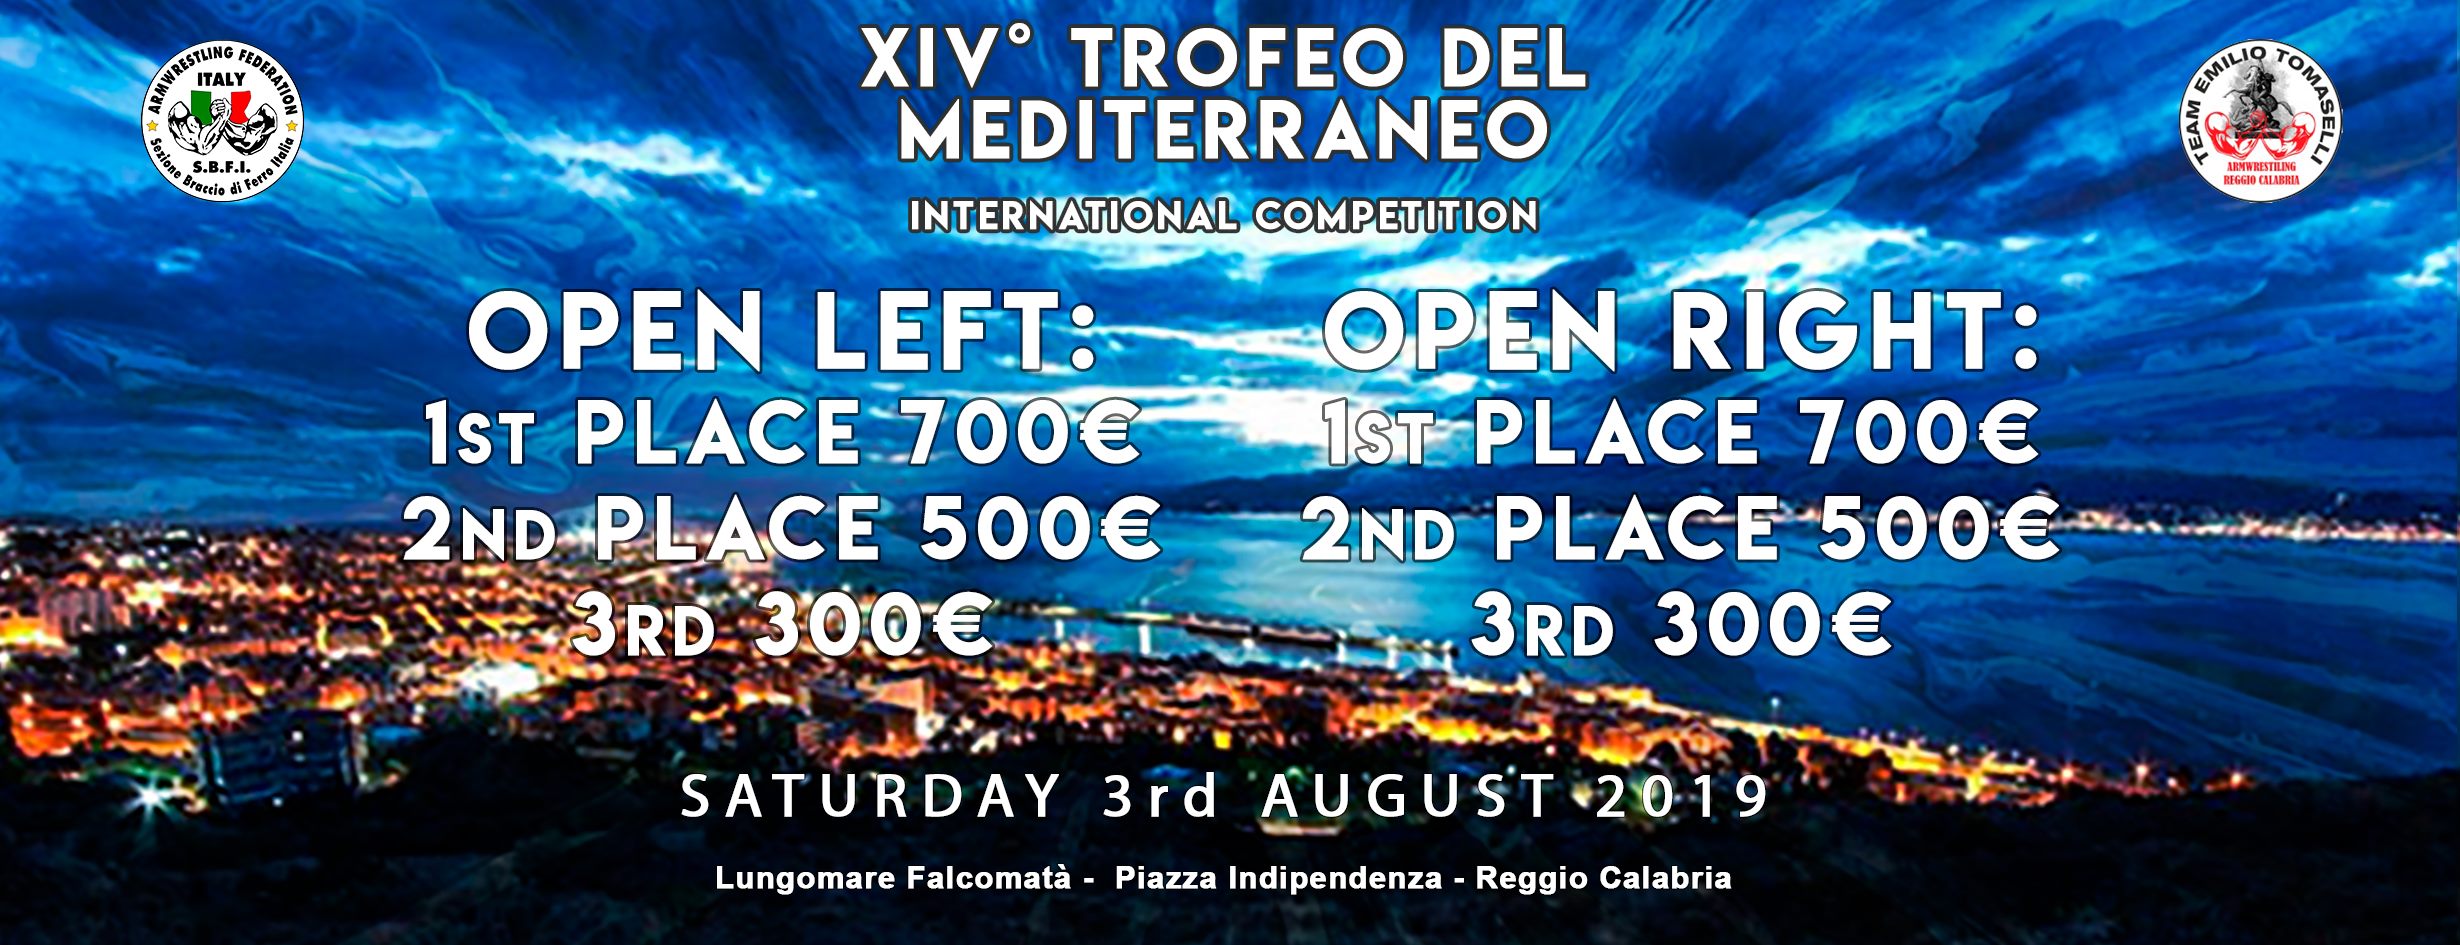 SBFI - Sezione Braccio di Ferro Italia - XIV Trofeo del Mediterraneo